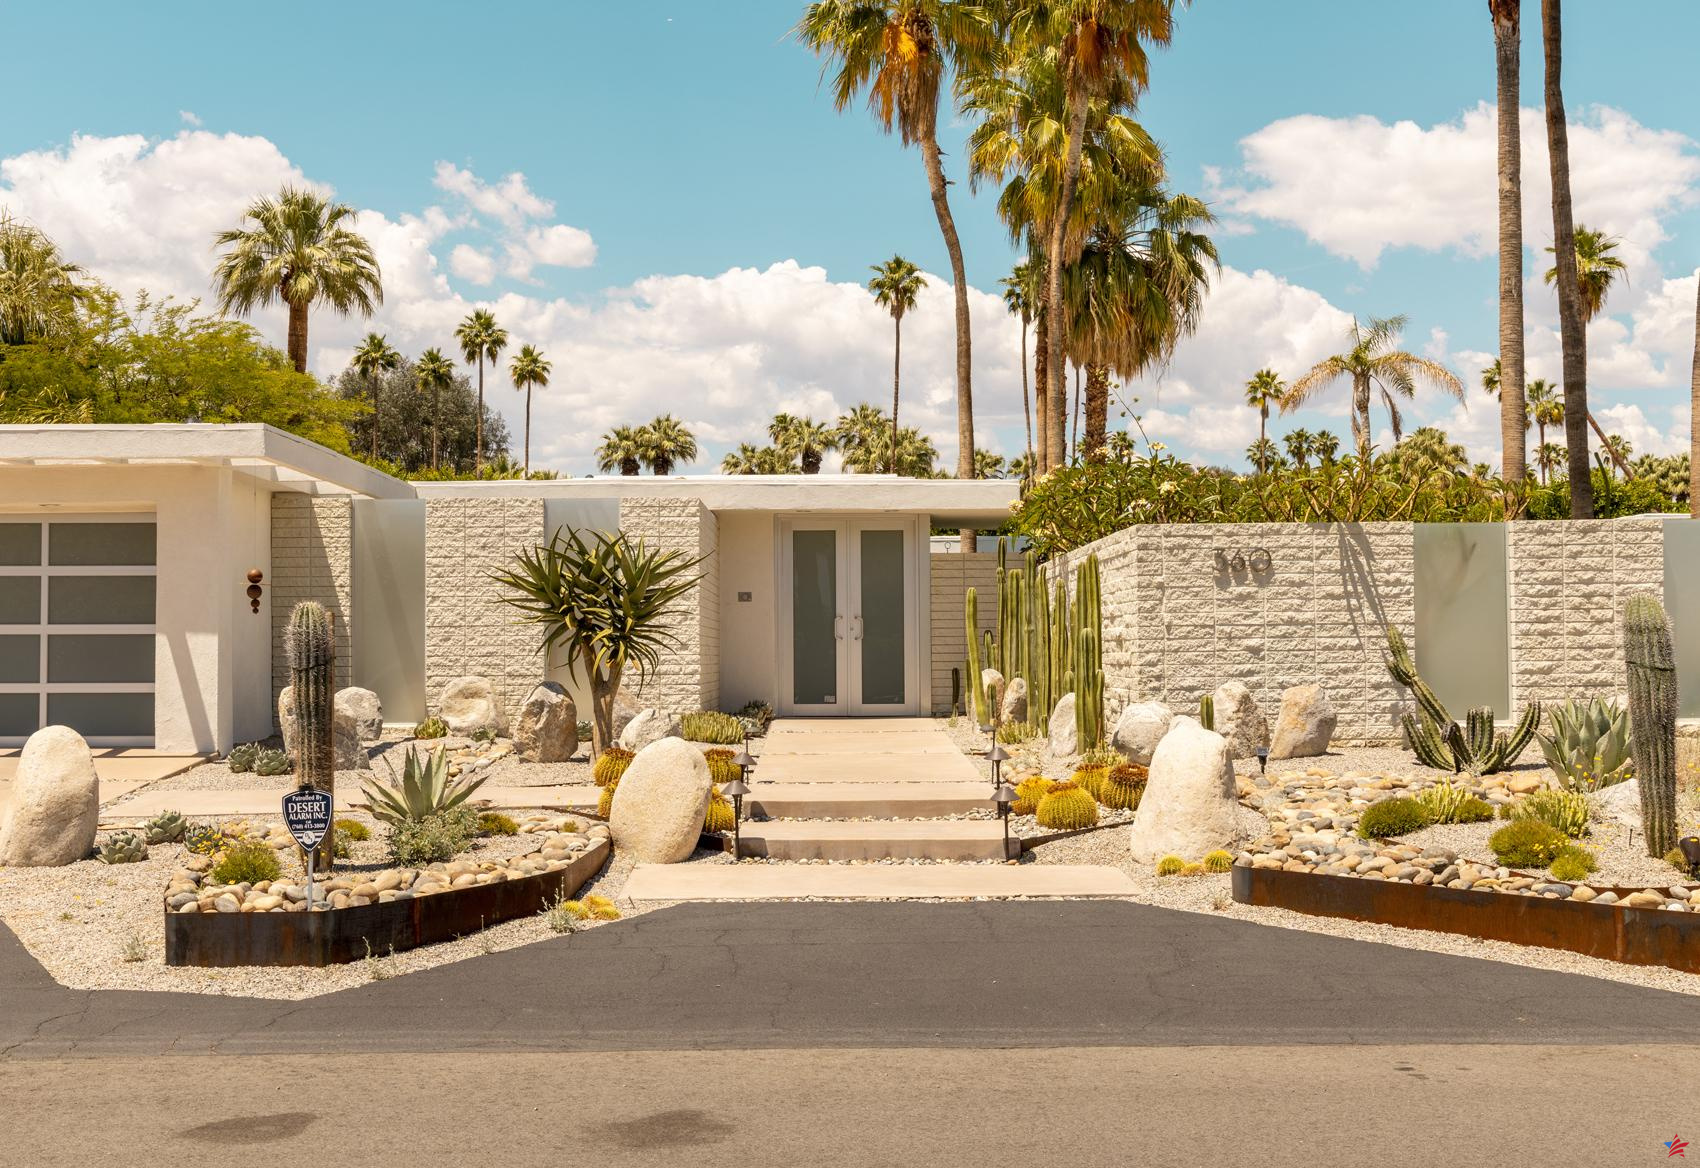 Dos días en Palm Springs, un oasis retro a dos horas de Los Ángeles